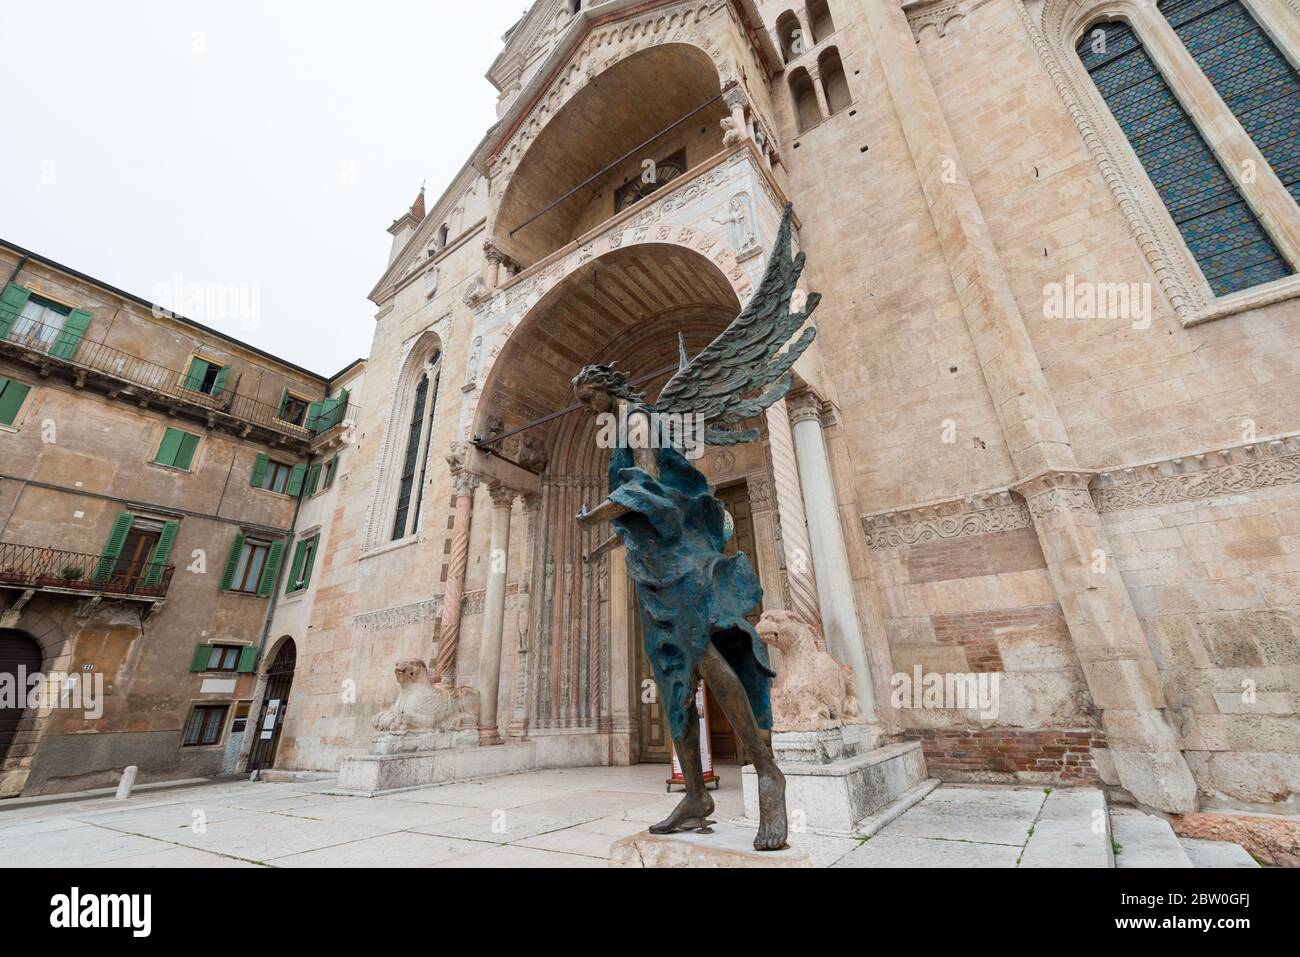 VERONA, ITALIA - 15, MARZO, 2018: Imagen de gran angular de una hermosa estatua de ángel y frente de la catedral de Santa María Matricolare, una visita turística católica Foto de stock